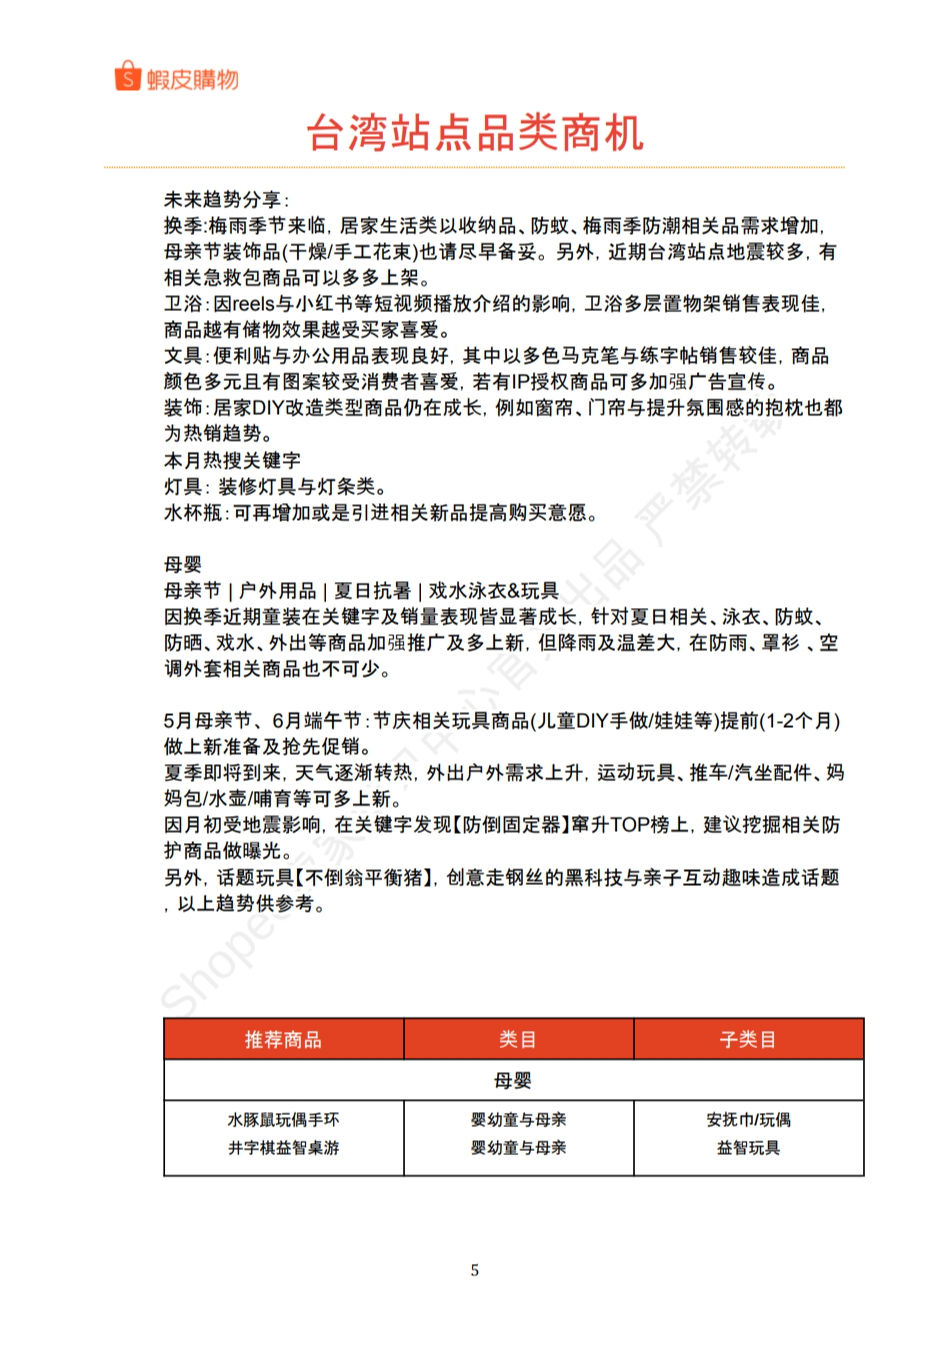 【Shopee市场周报】虾皮台湾站2024年4月第4周市场周报